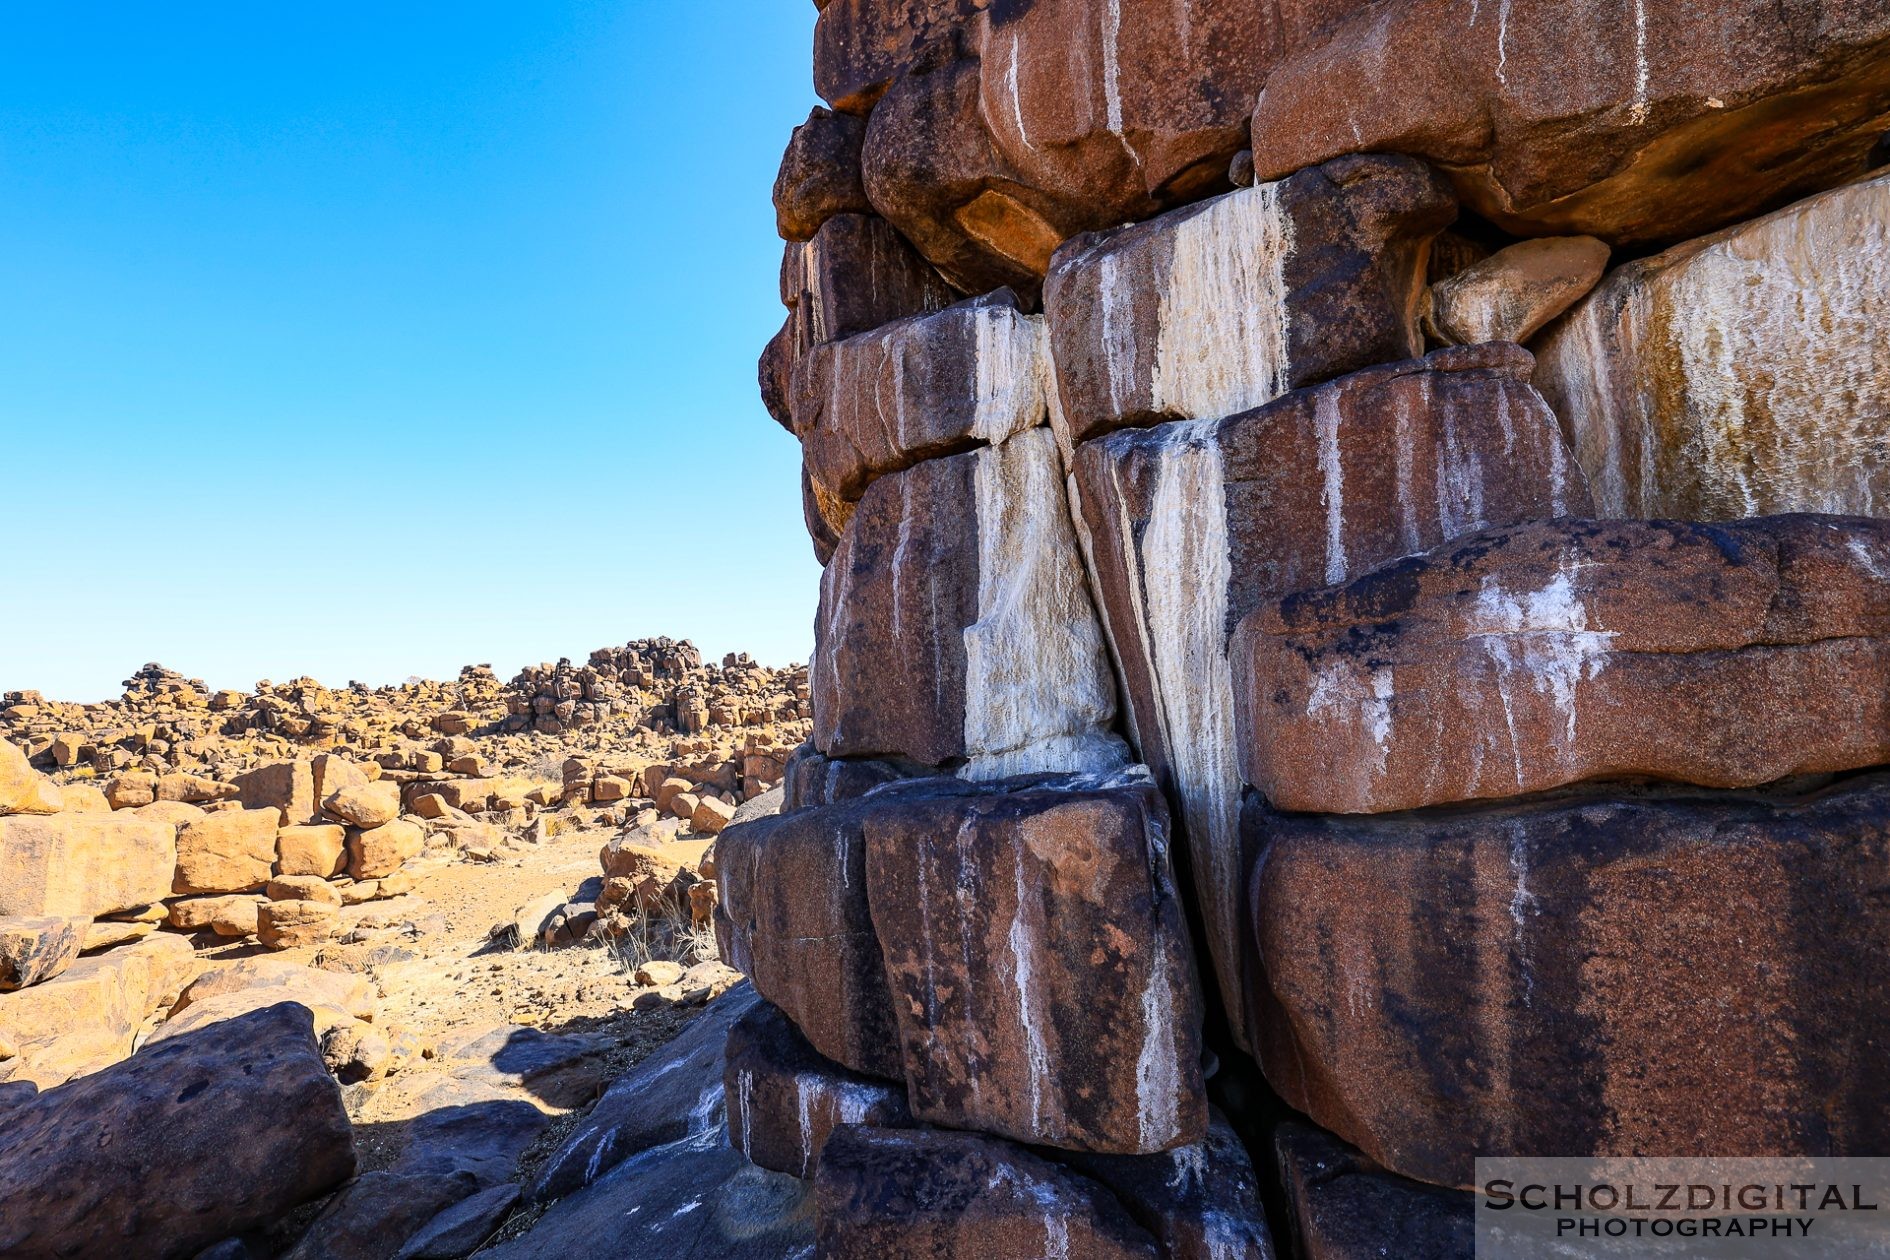 Die senkrechten weißen Streifen auf den Felsen sind Urinspuren der dort lebenden Klippschliefer.